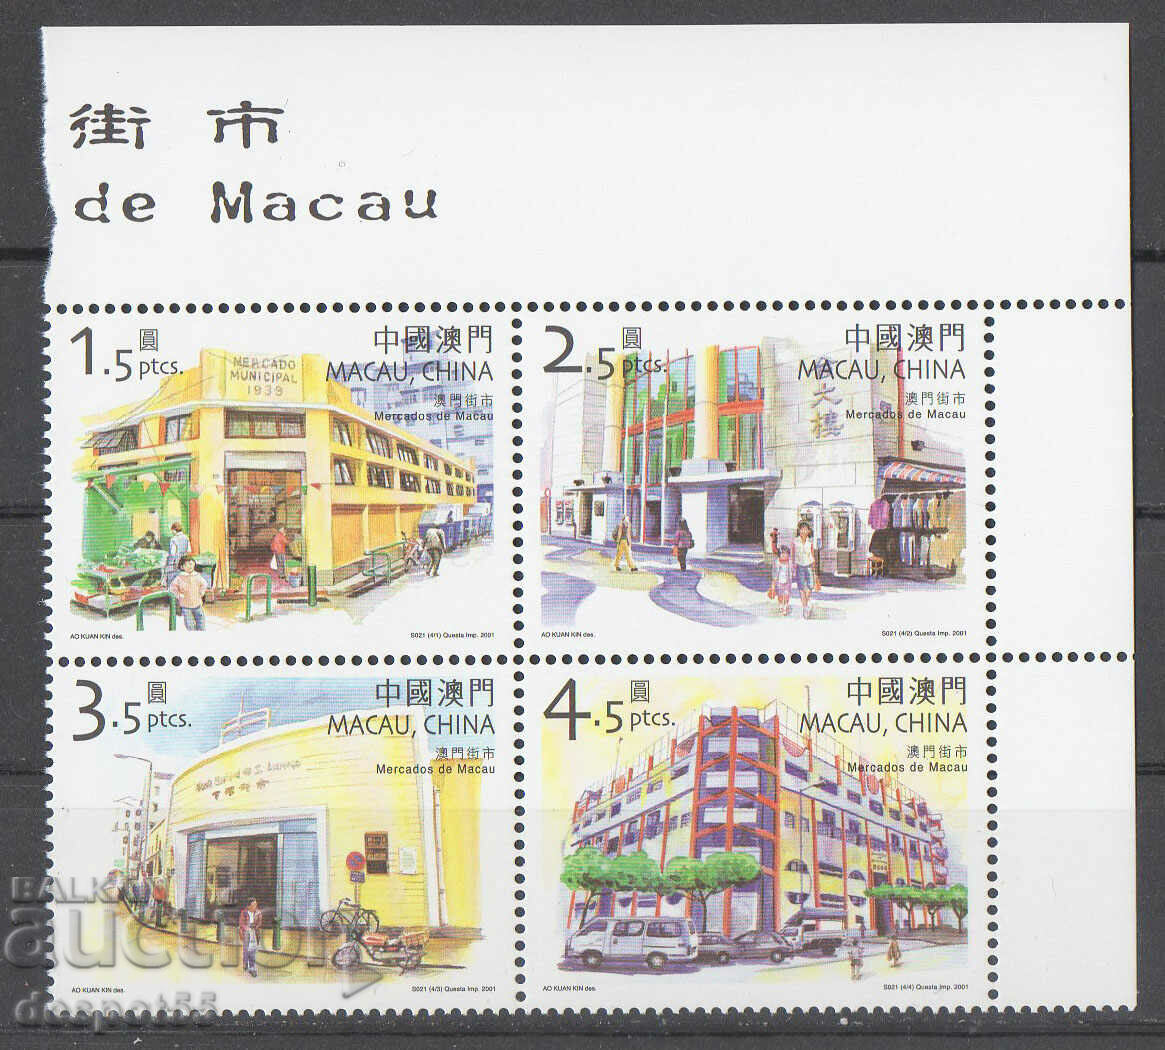 2001. Macau. Markets in Macau. Block.